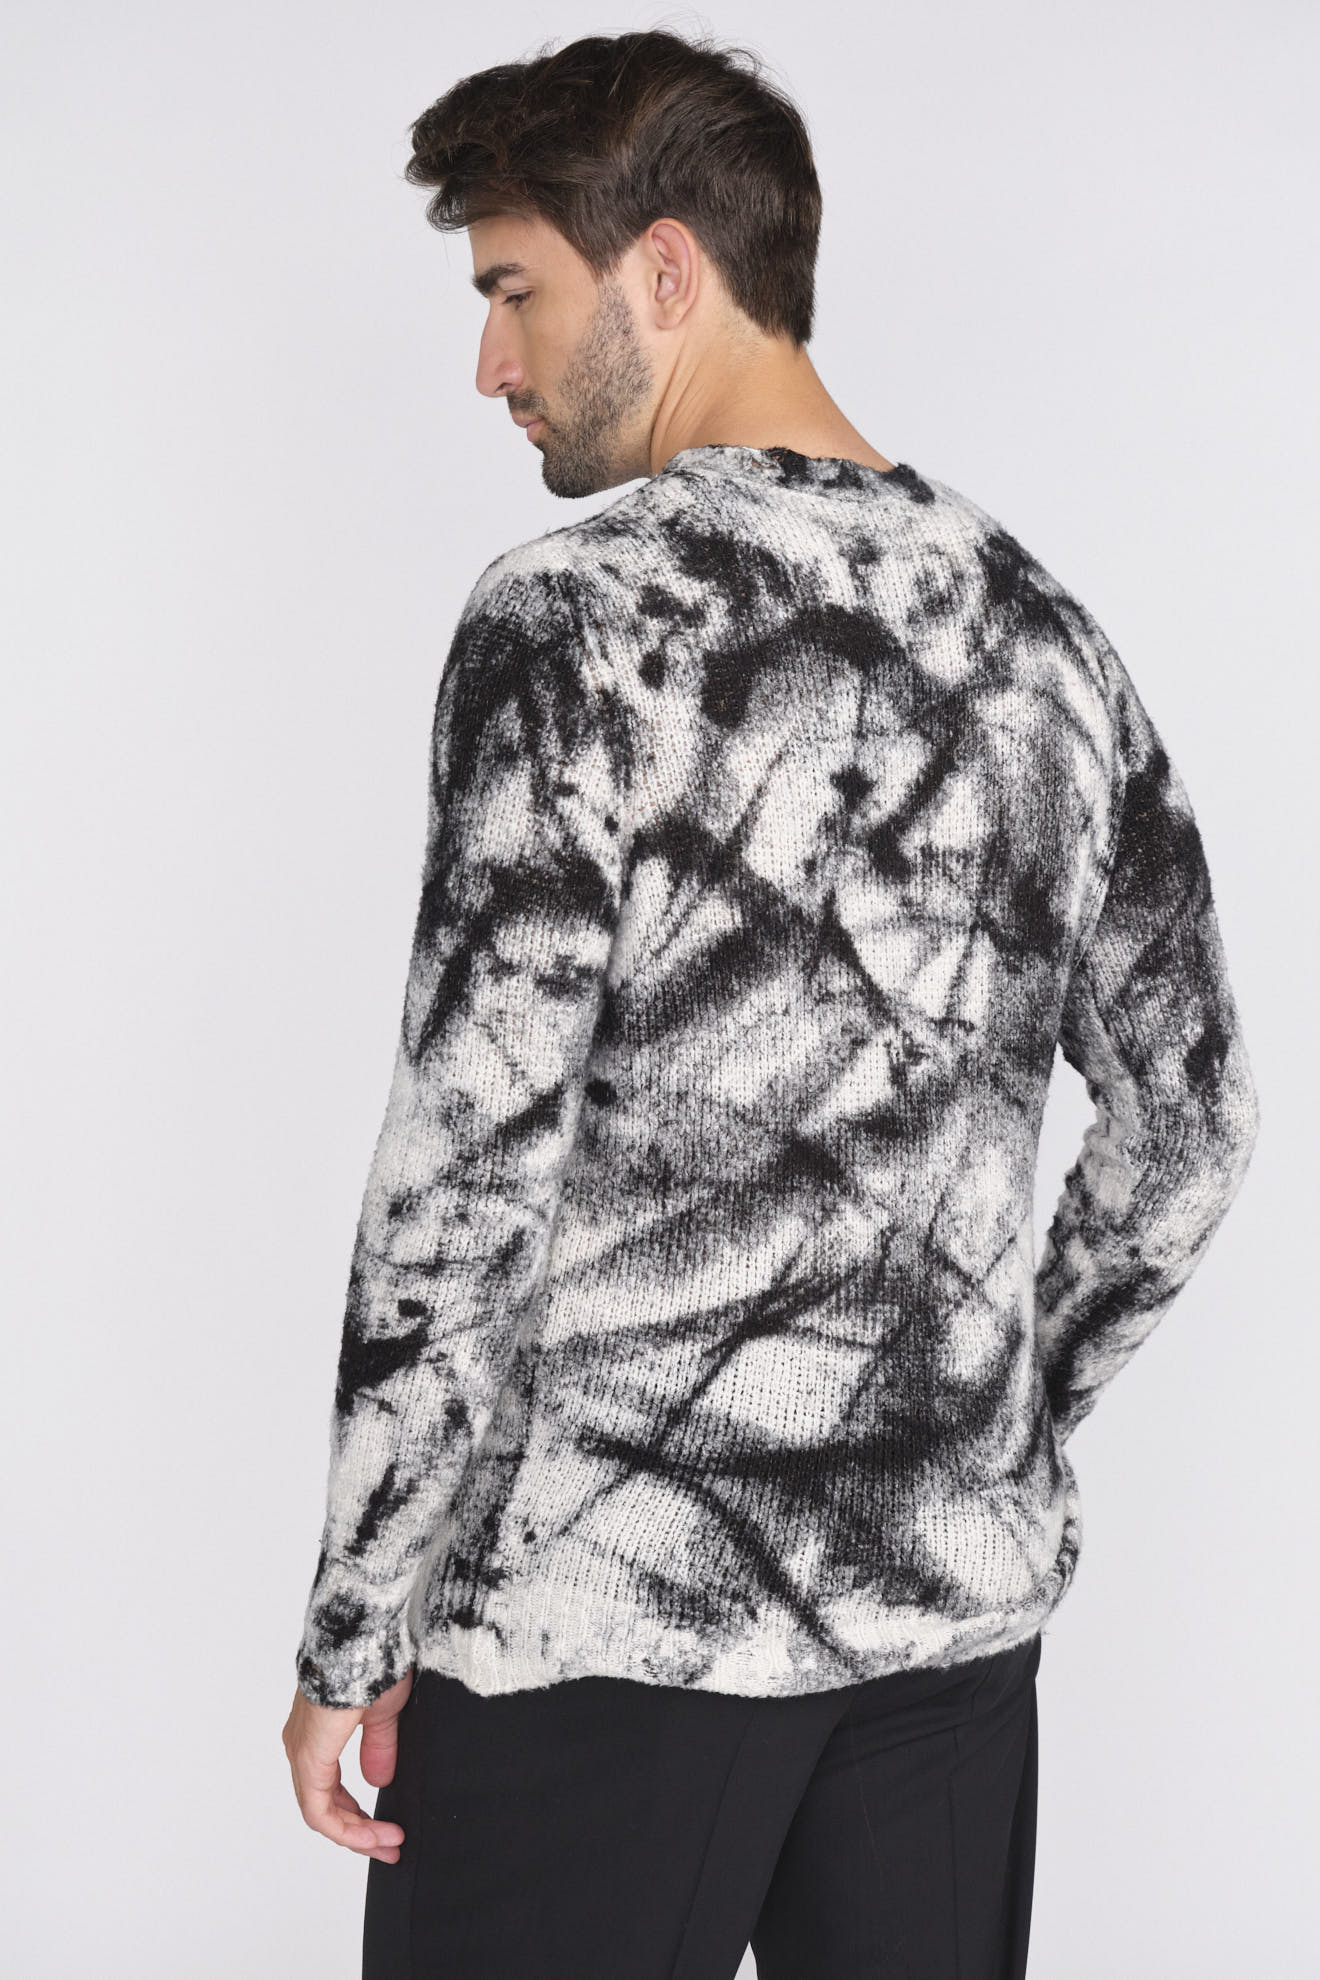 Avant Toi Crew-Neck Sweater in Destroyed Optics schwarz XL